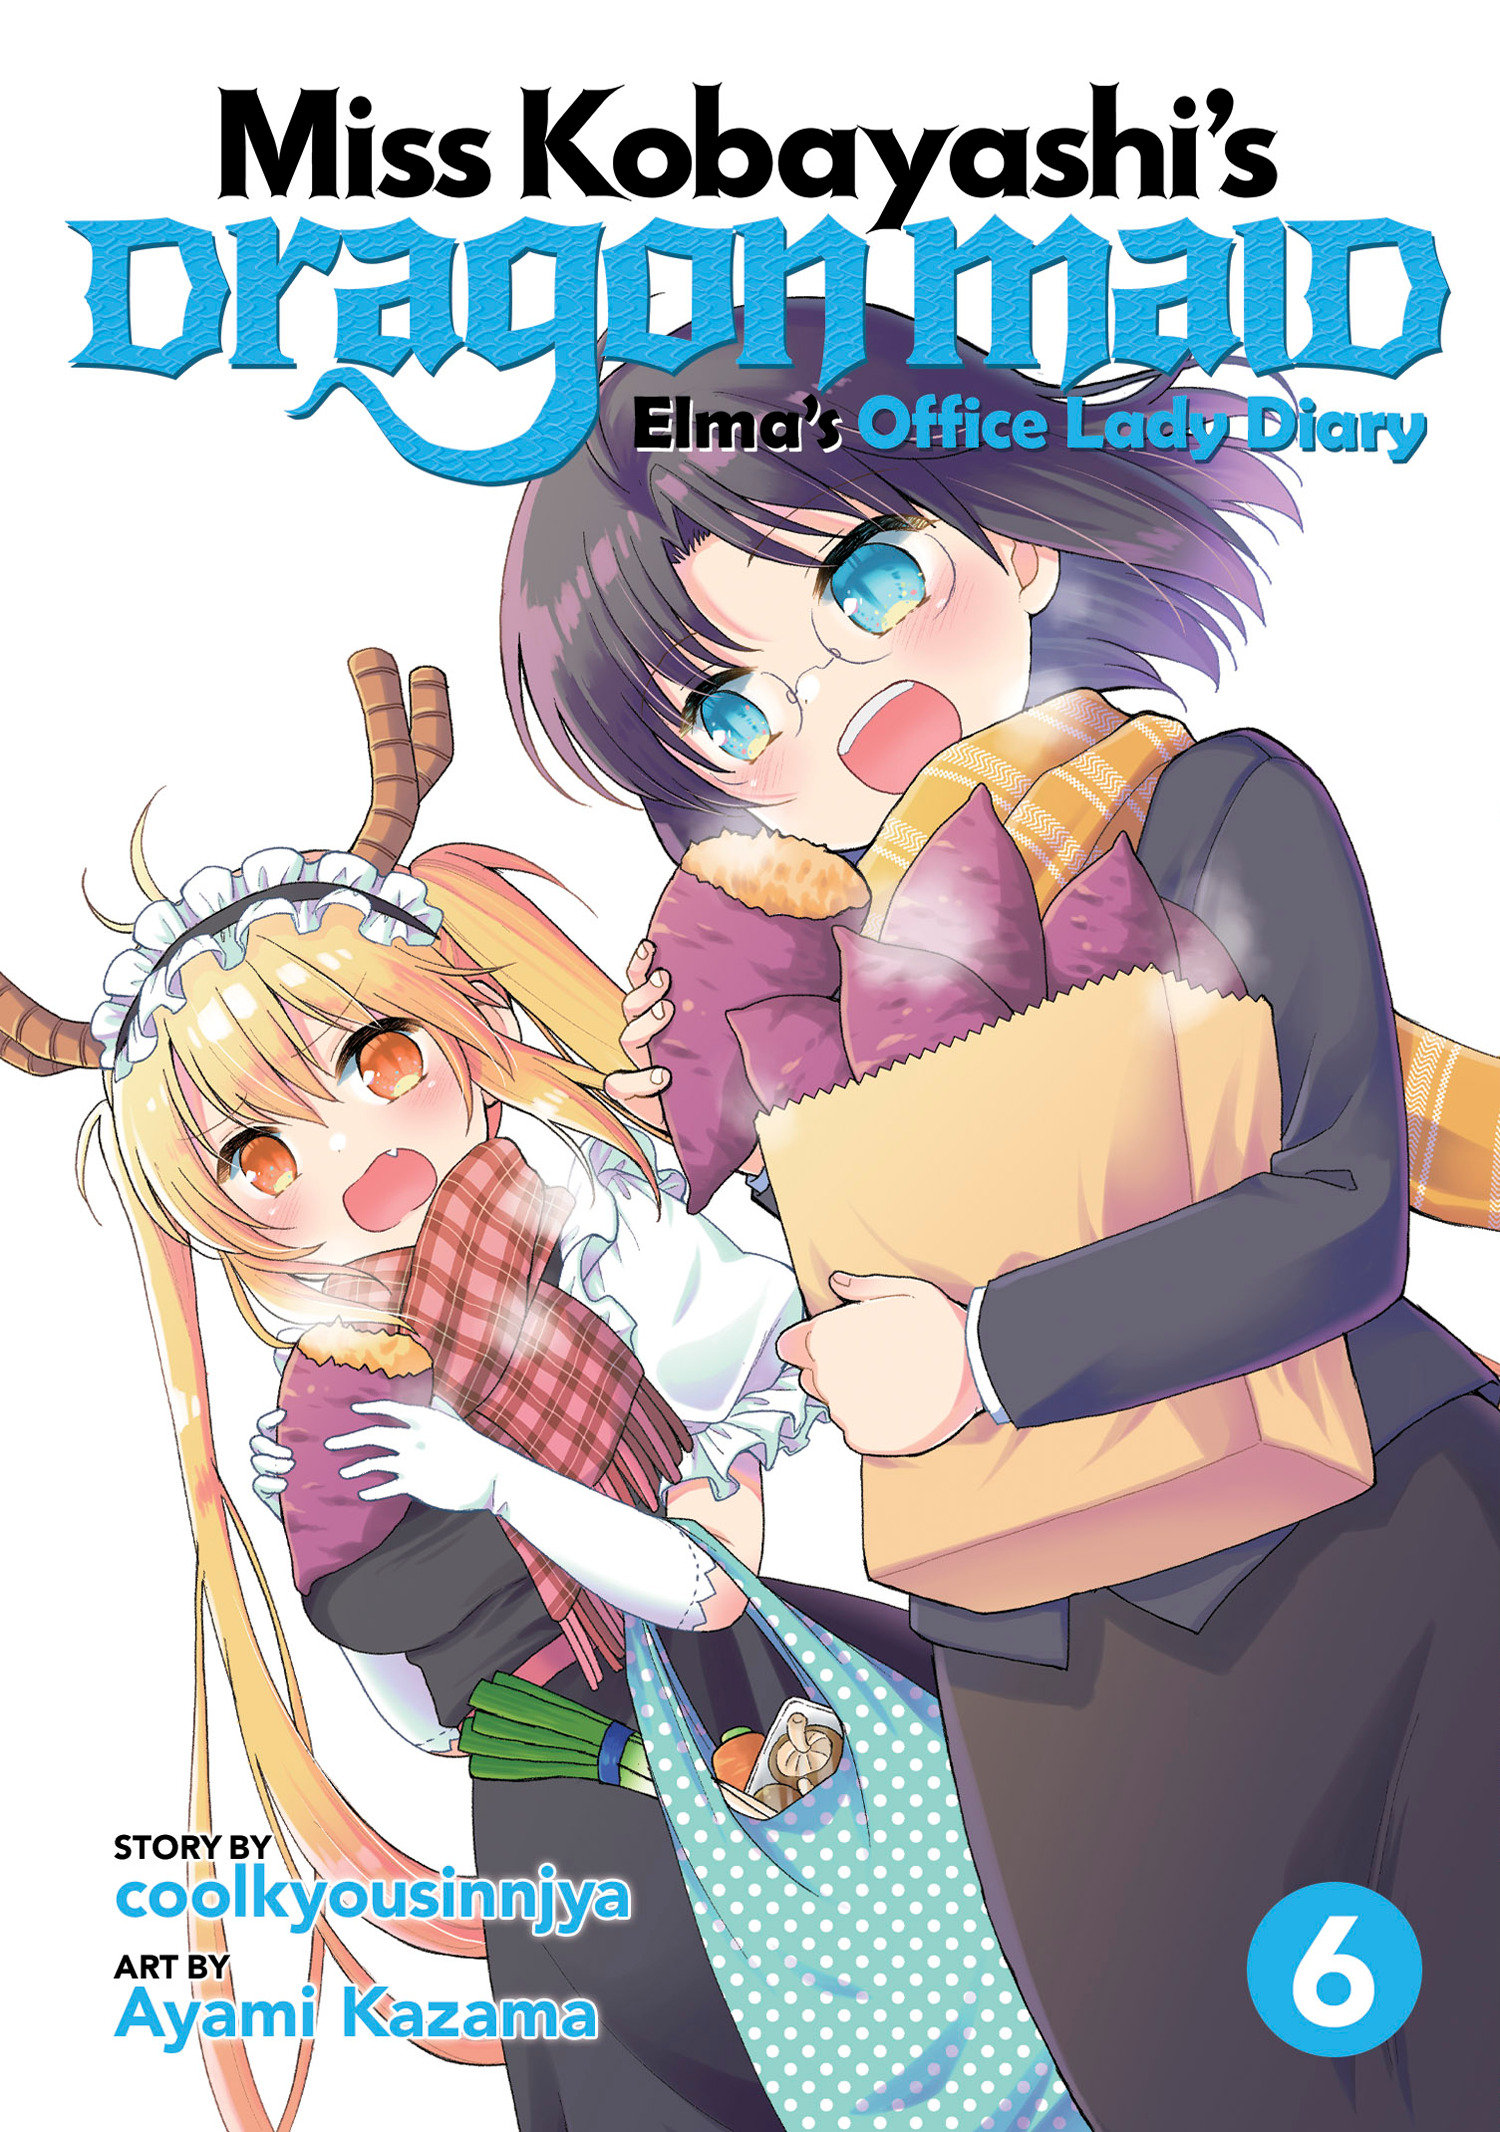 Miss Kobayashi's Dragon Maid Elma Diary Manga Volume 6